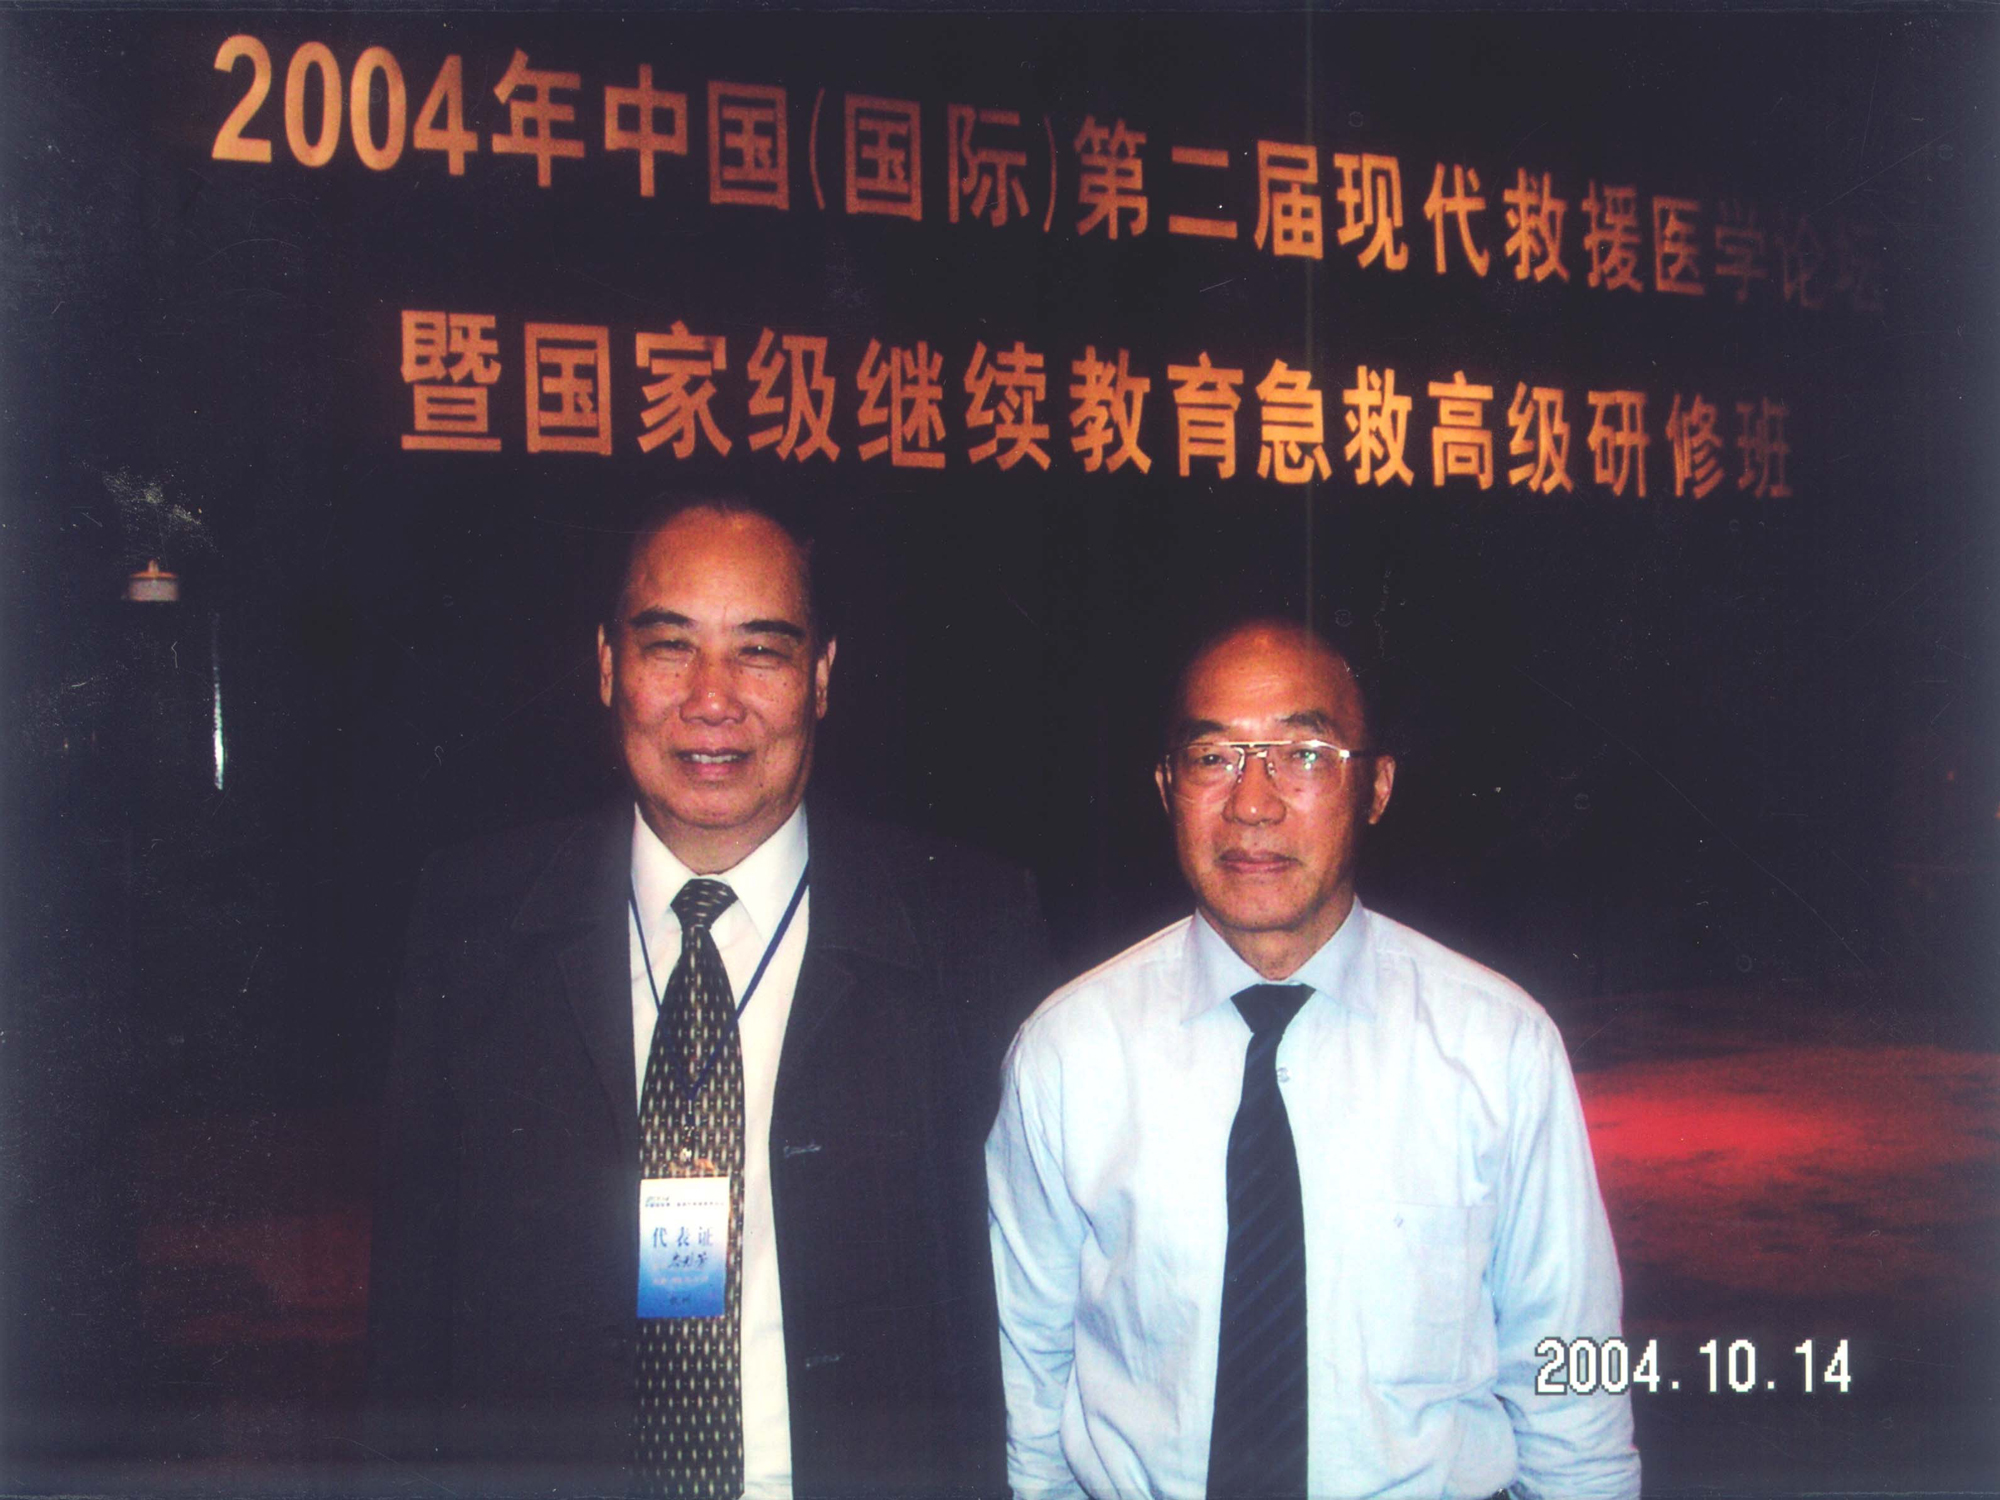 中國災害防御協會救援醫學會會長李宗浩教授（右）和岑烈芳教授合影